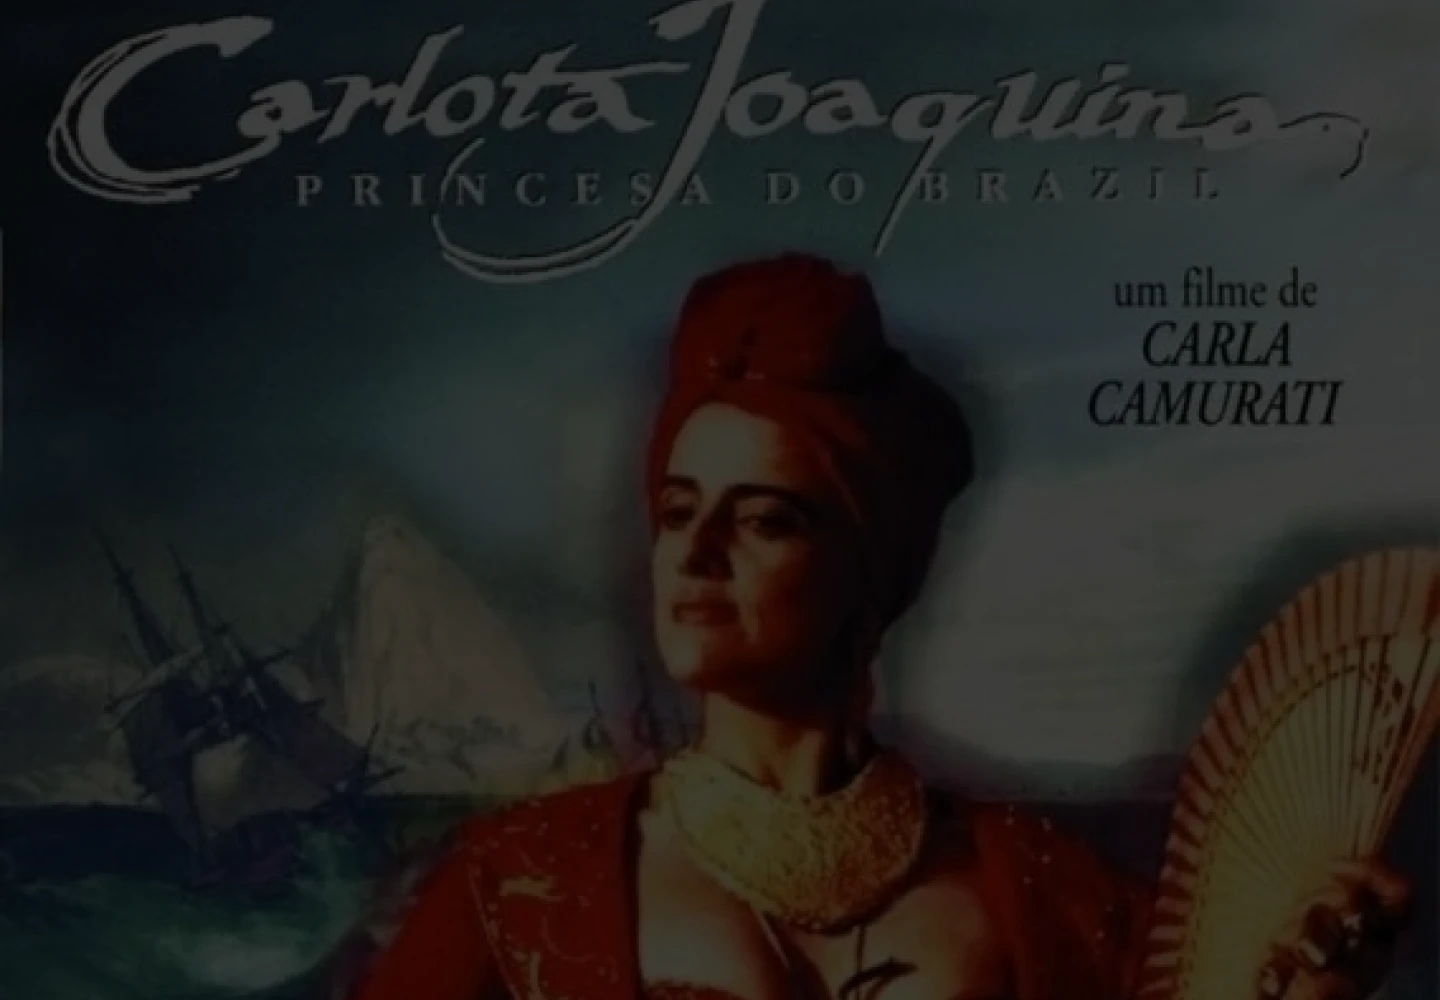 Pôster do filme “Carlota Joaquina, a princesa do Brasil”.